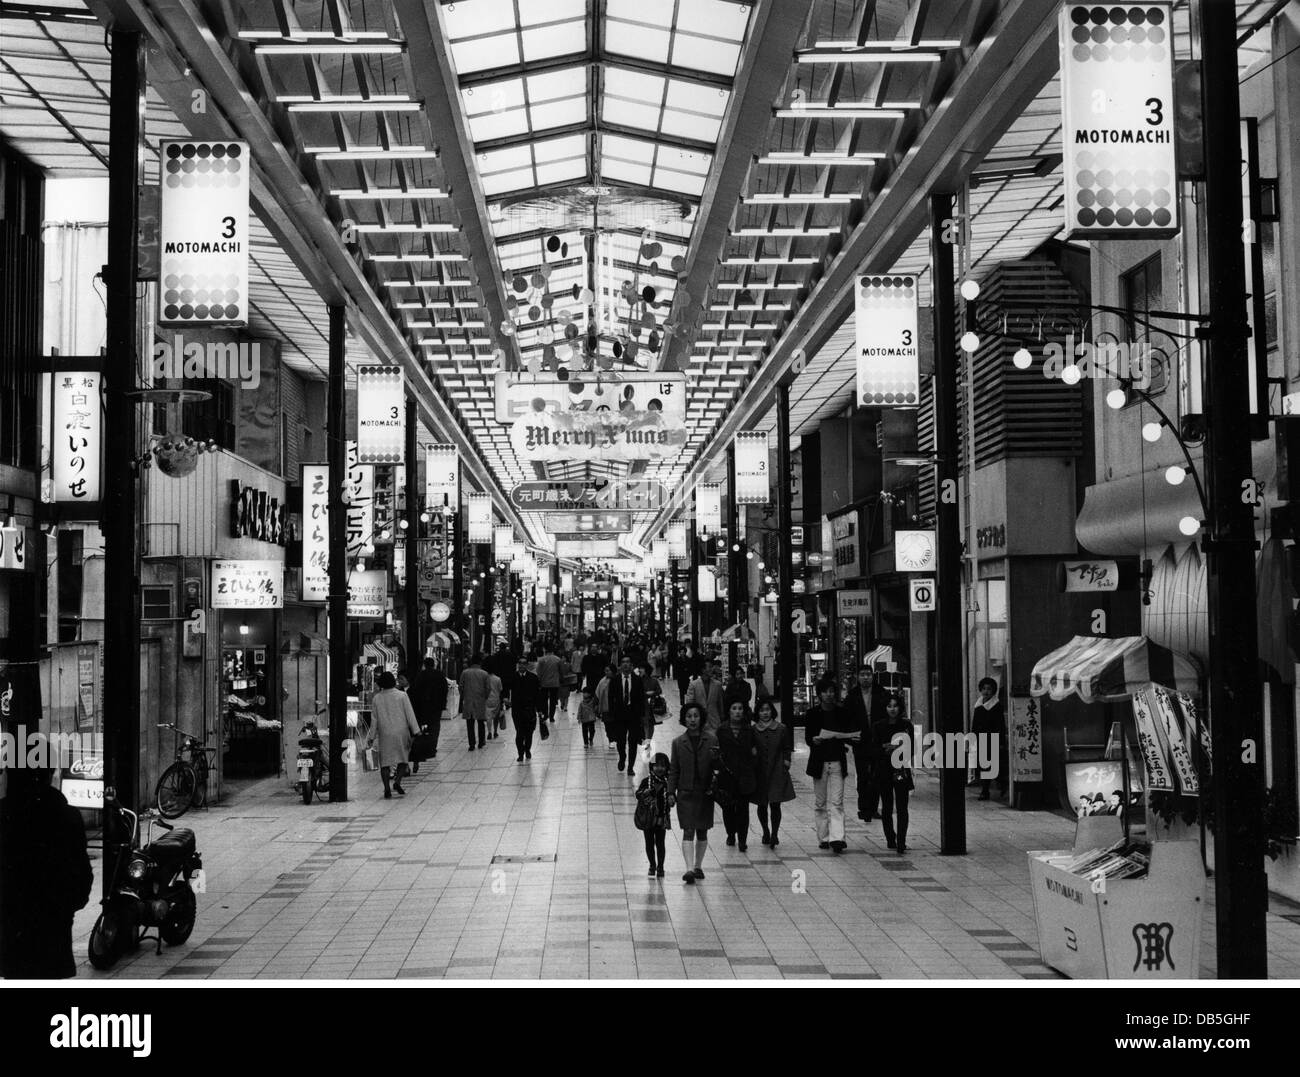 Geografia / viaggio, Giappone, Kobe, strade, scena stradale, Motomachi-Dori, galleria di negozi, 1971, diritti aggiuntivi-clearences-non disponibile Foto Stock